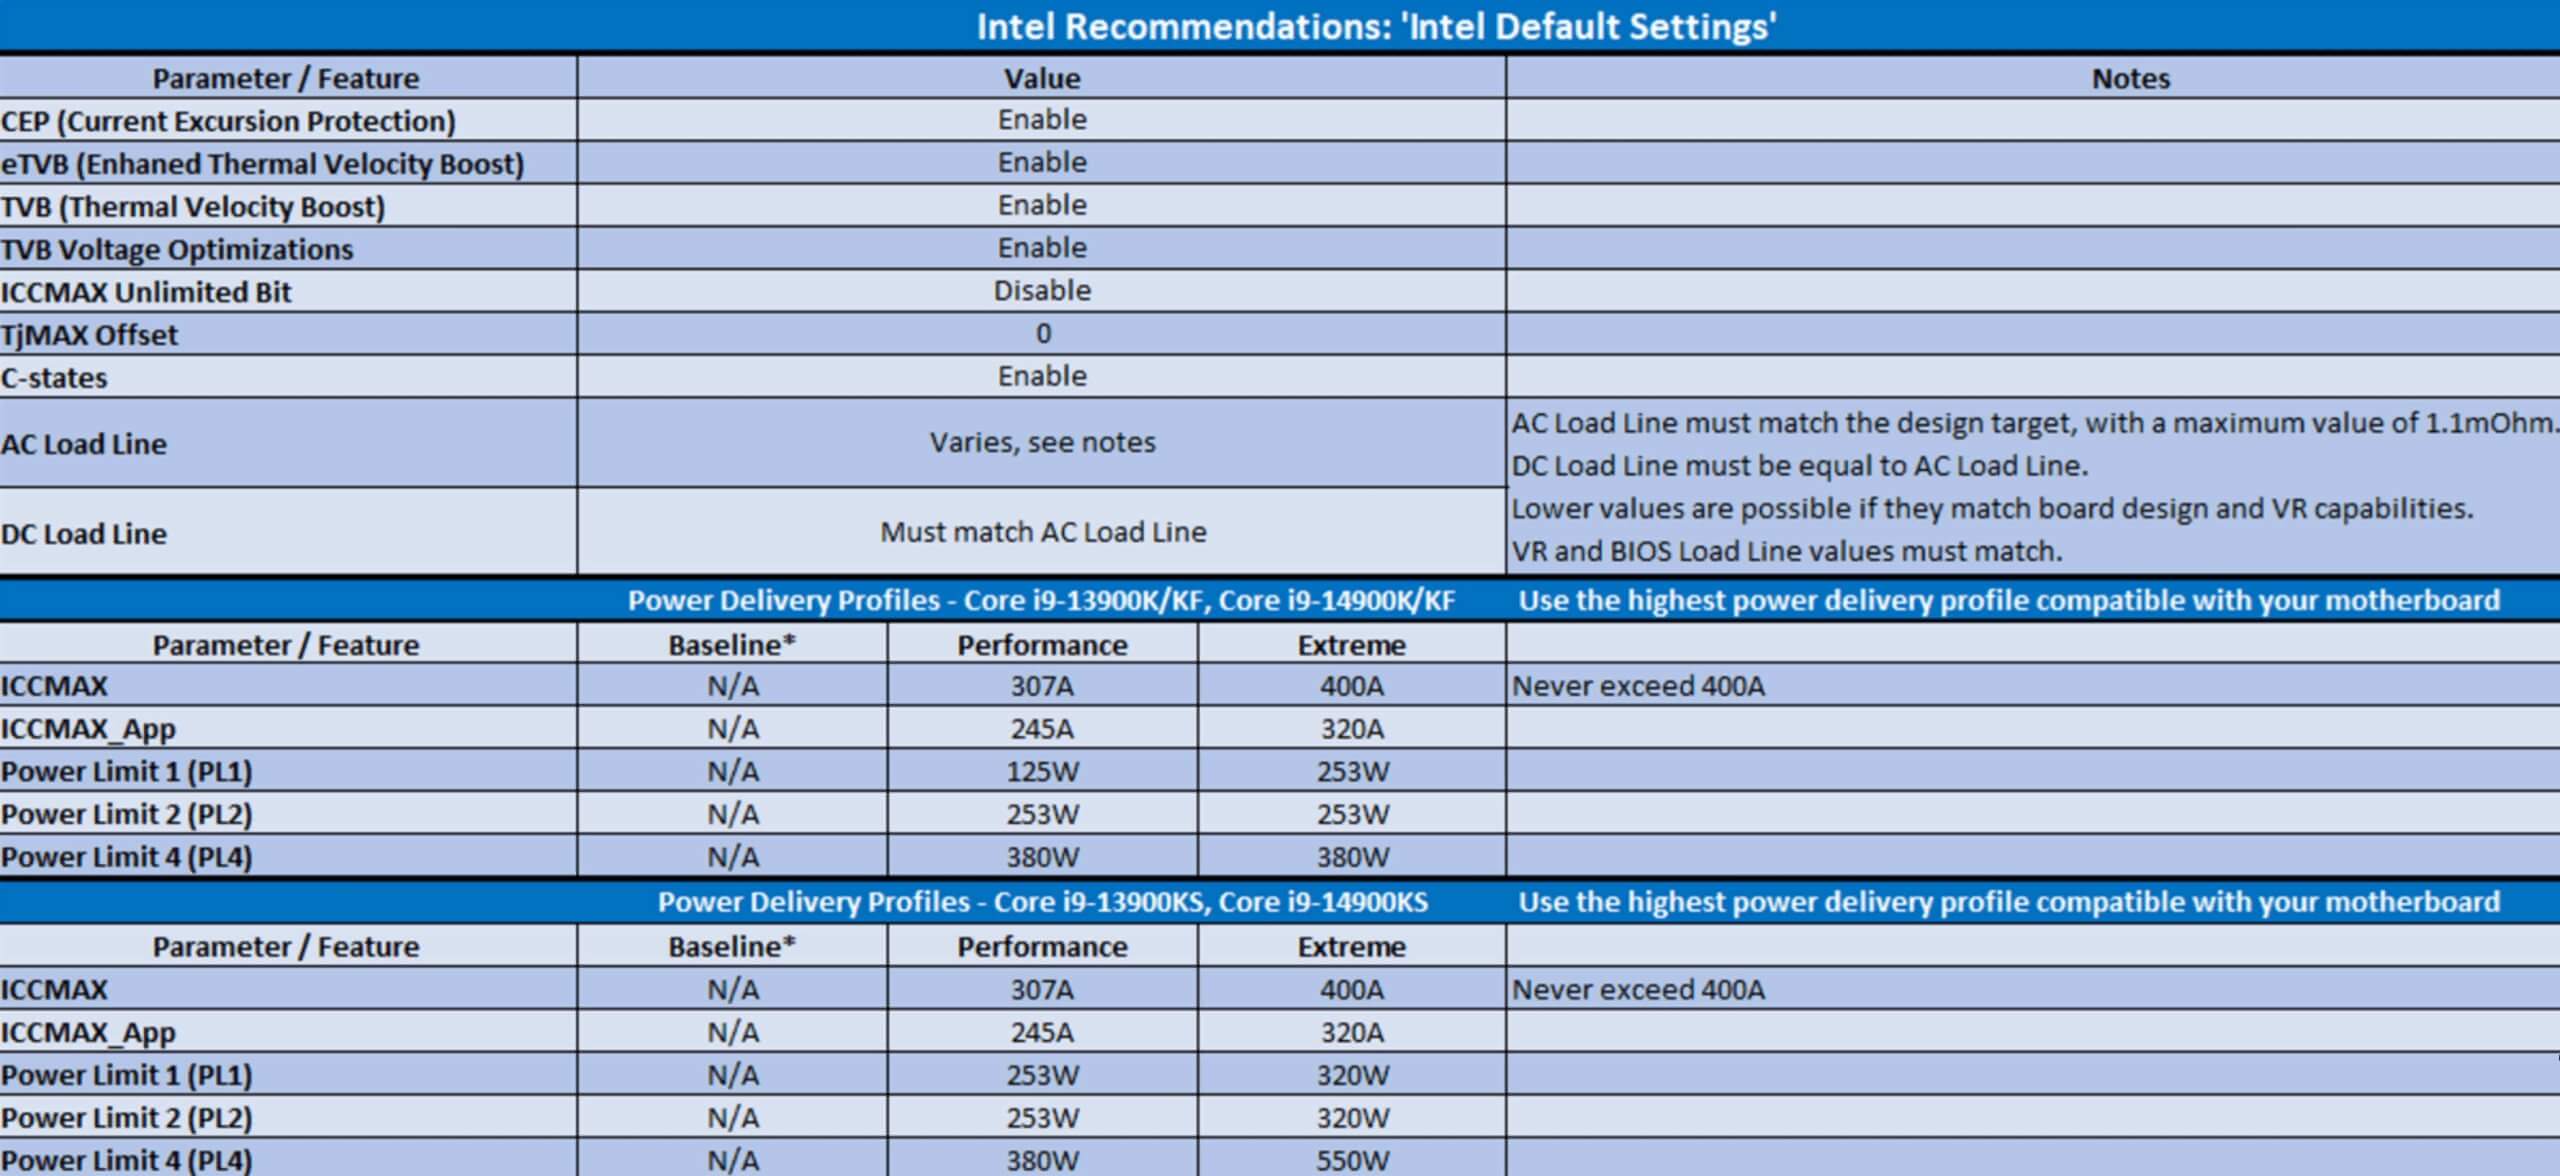 Intel default CPU settings